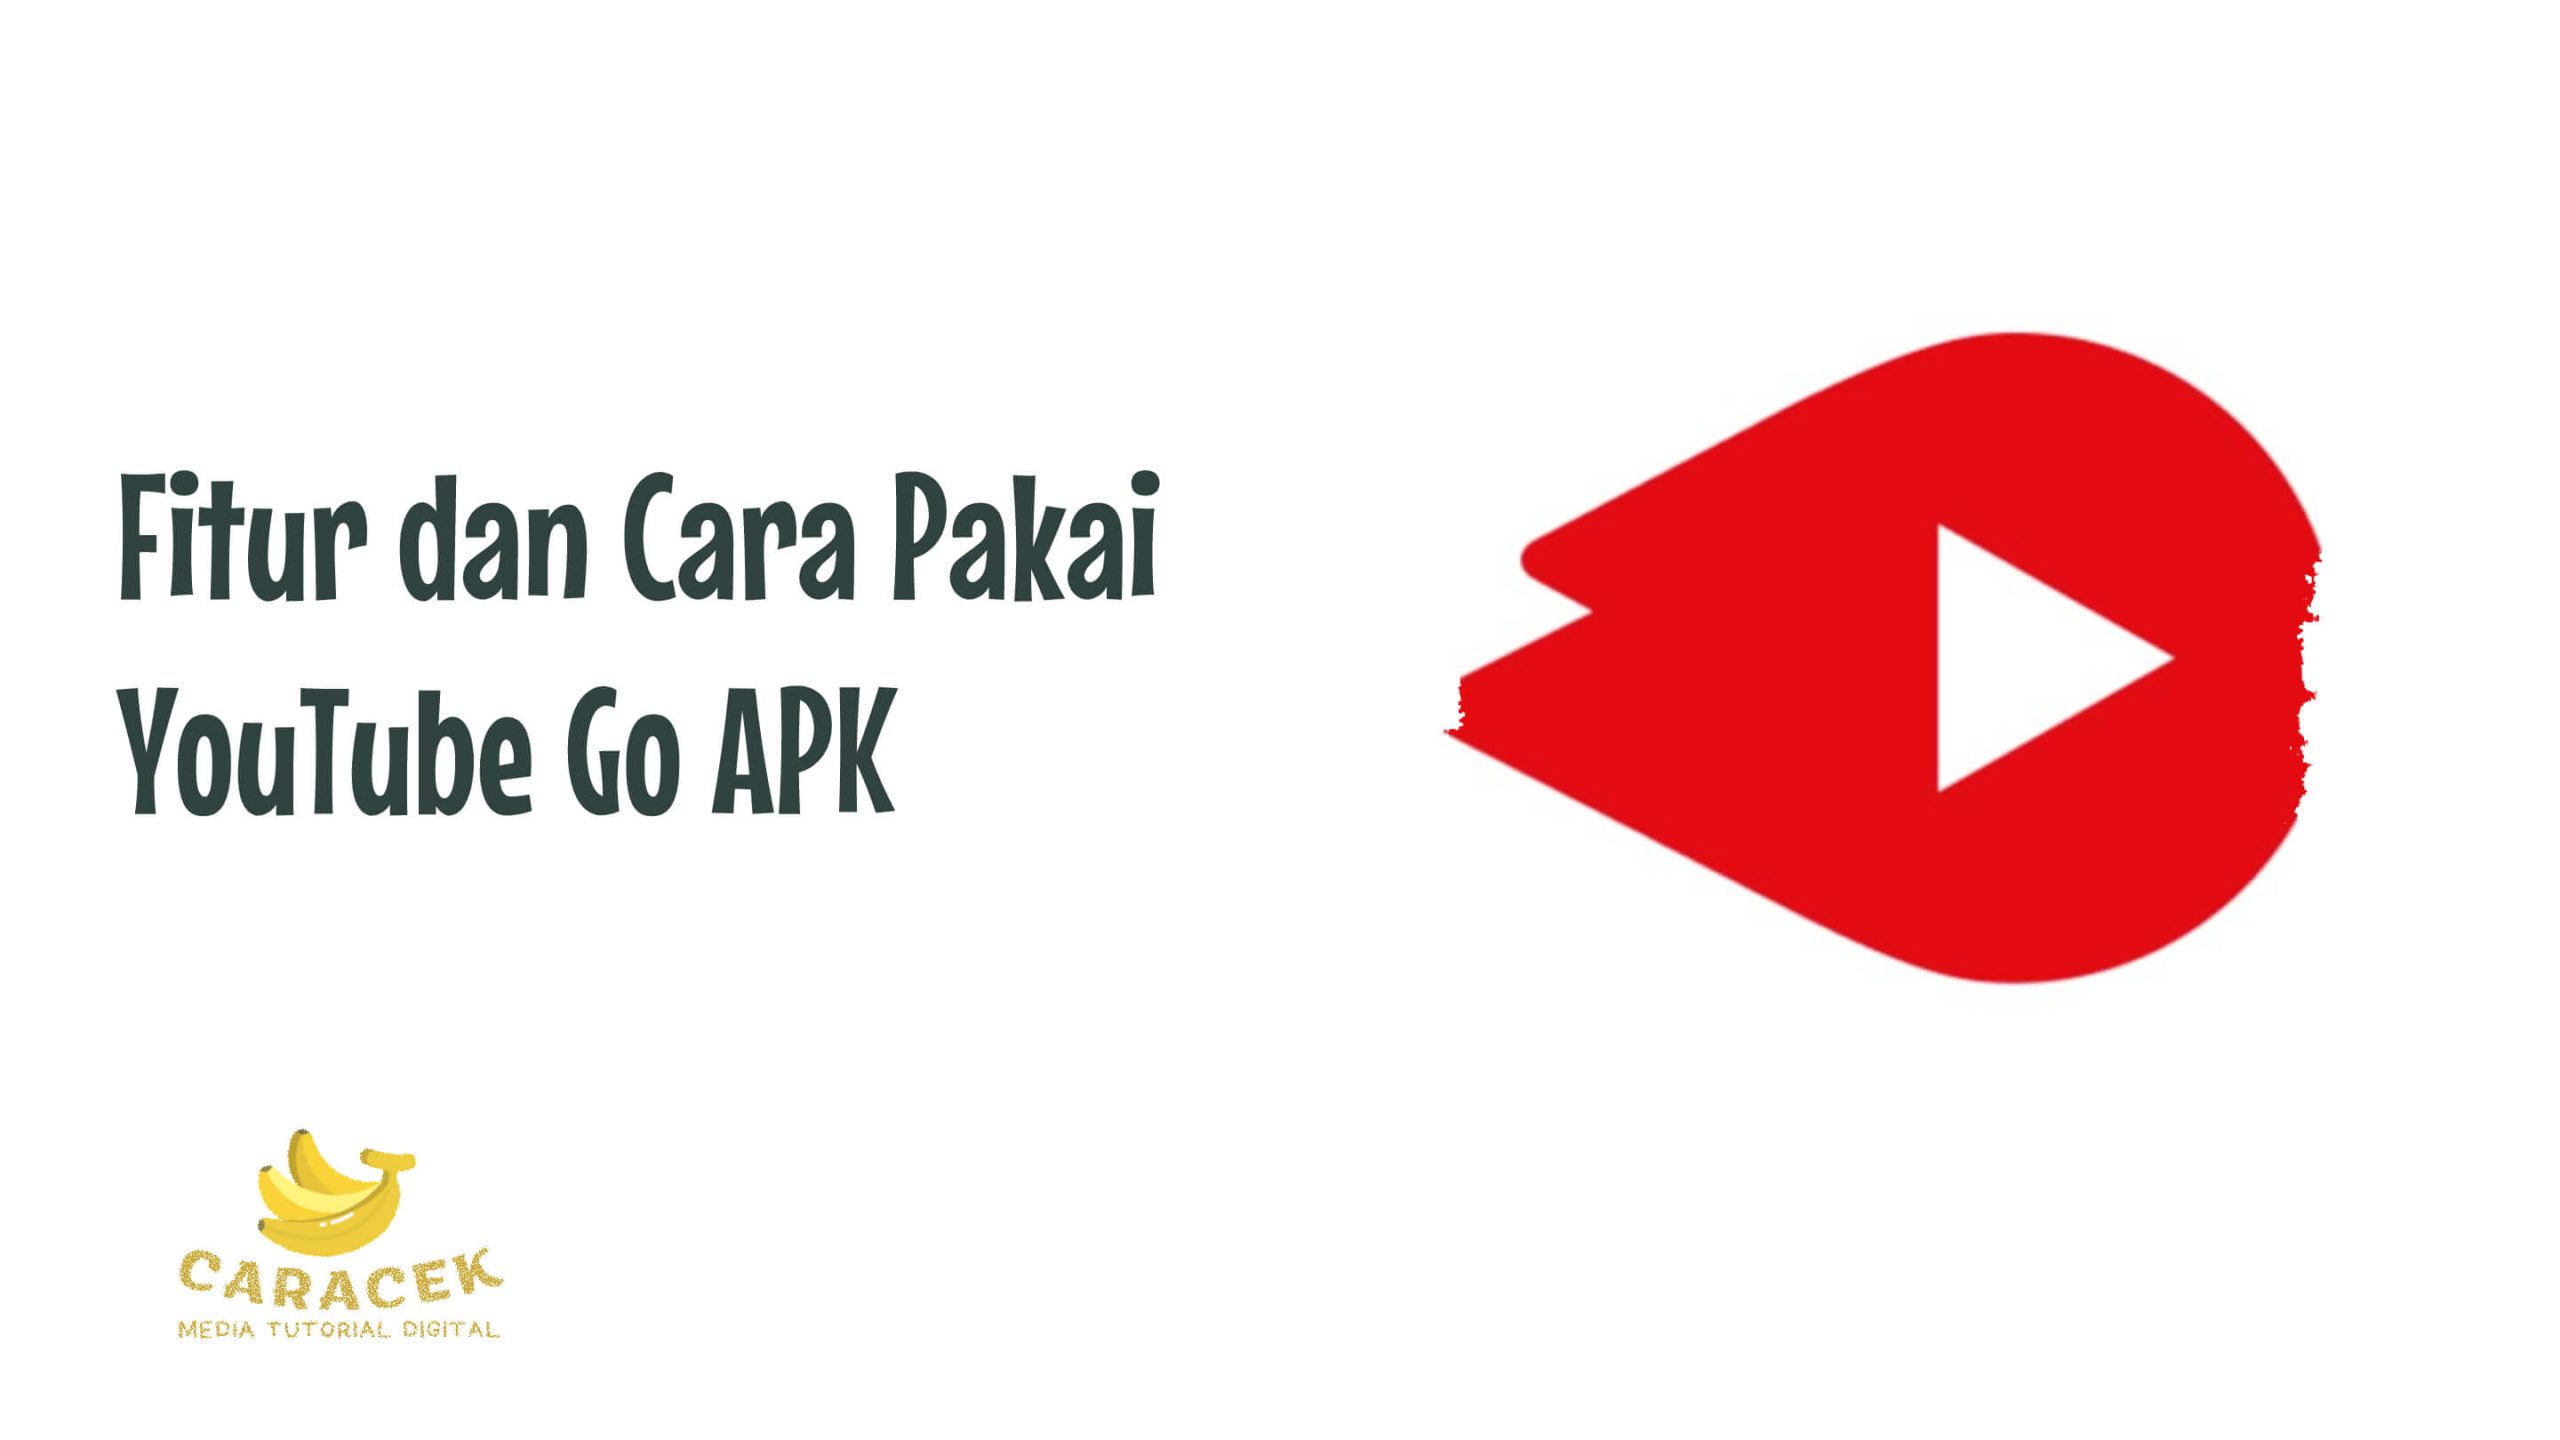 YouTube Go APK